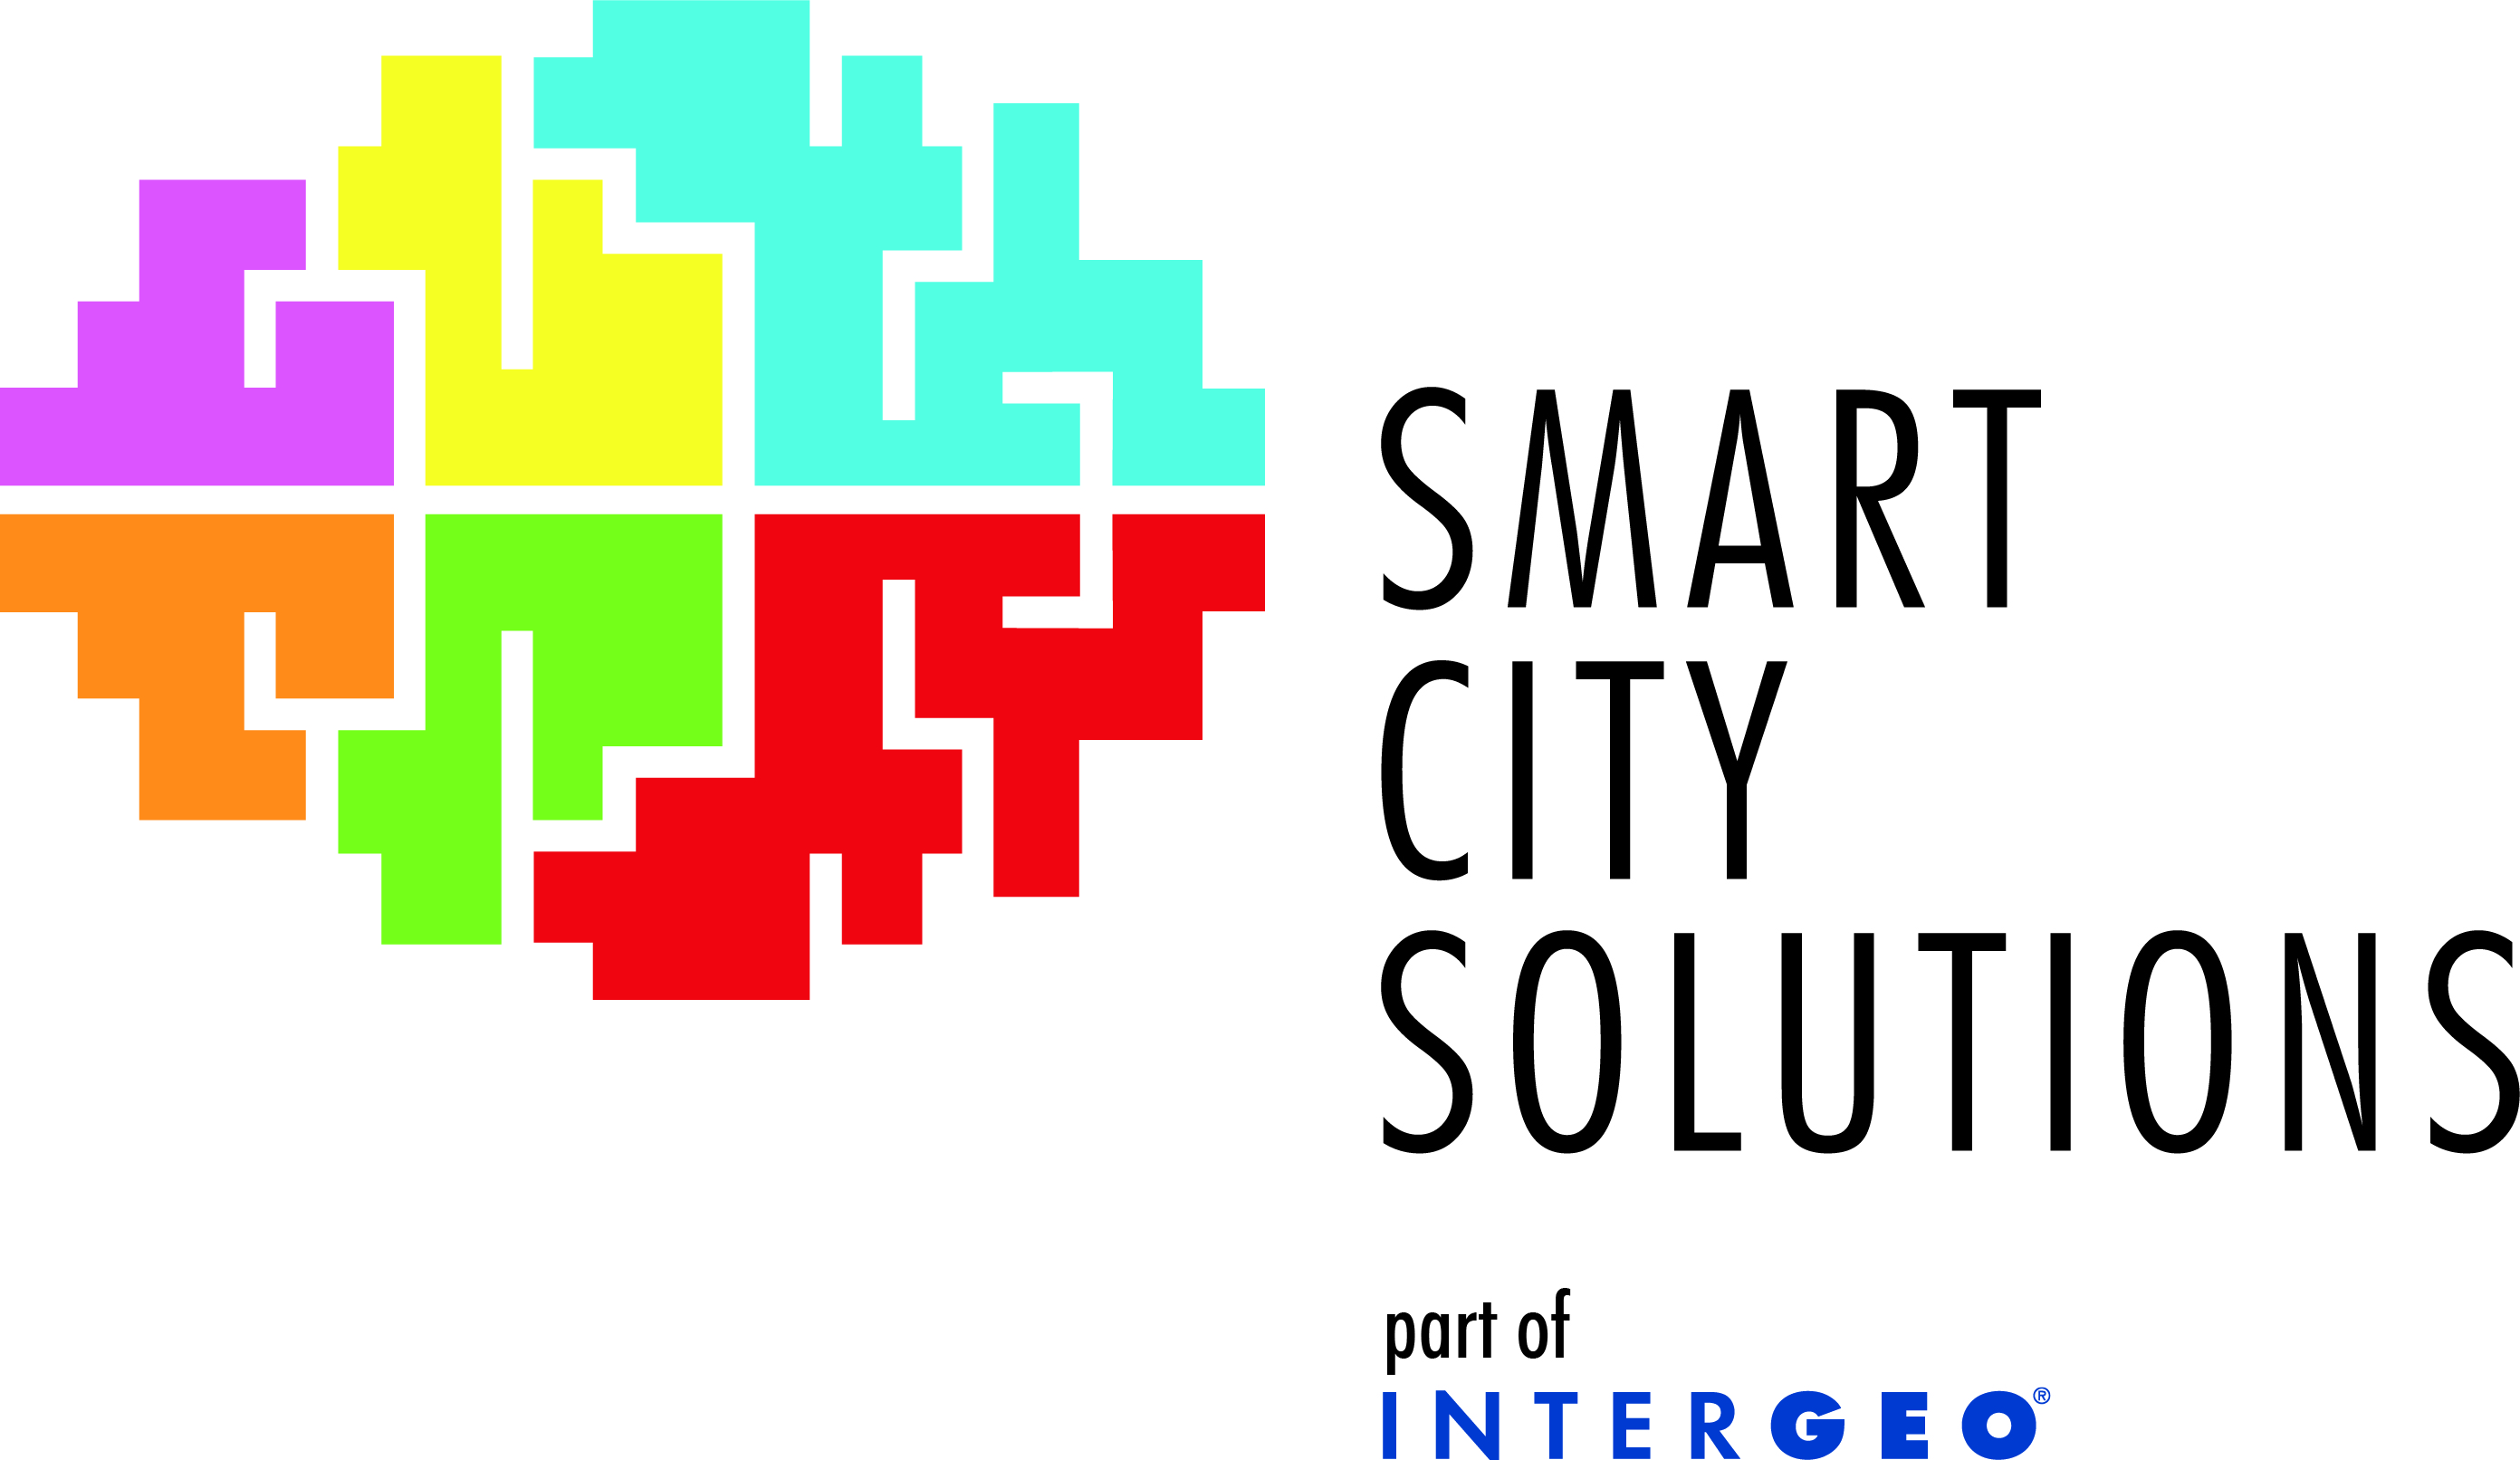 SMART CITY SOLUTIONS Messekonferenz, Teil der INTERGEO